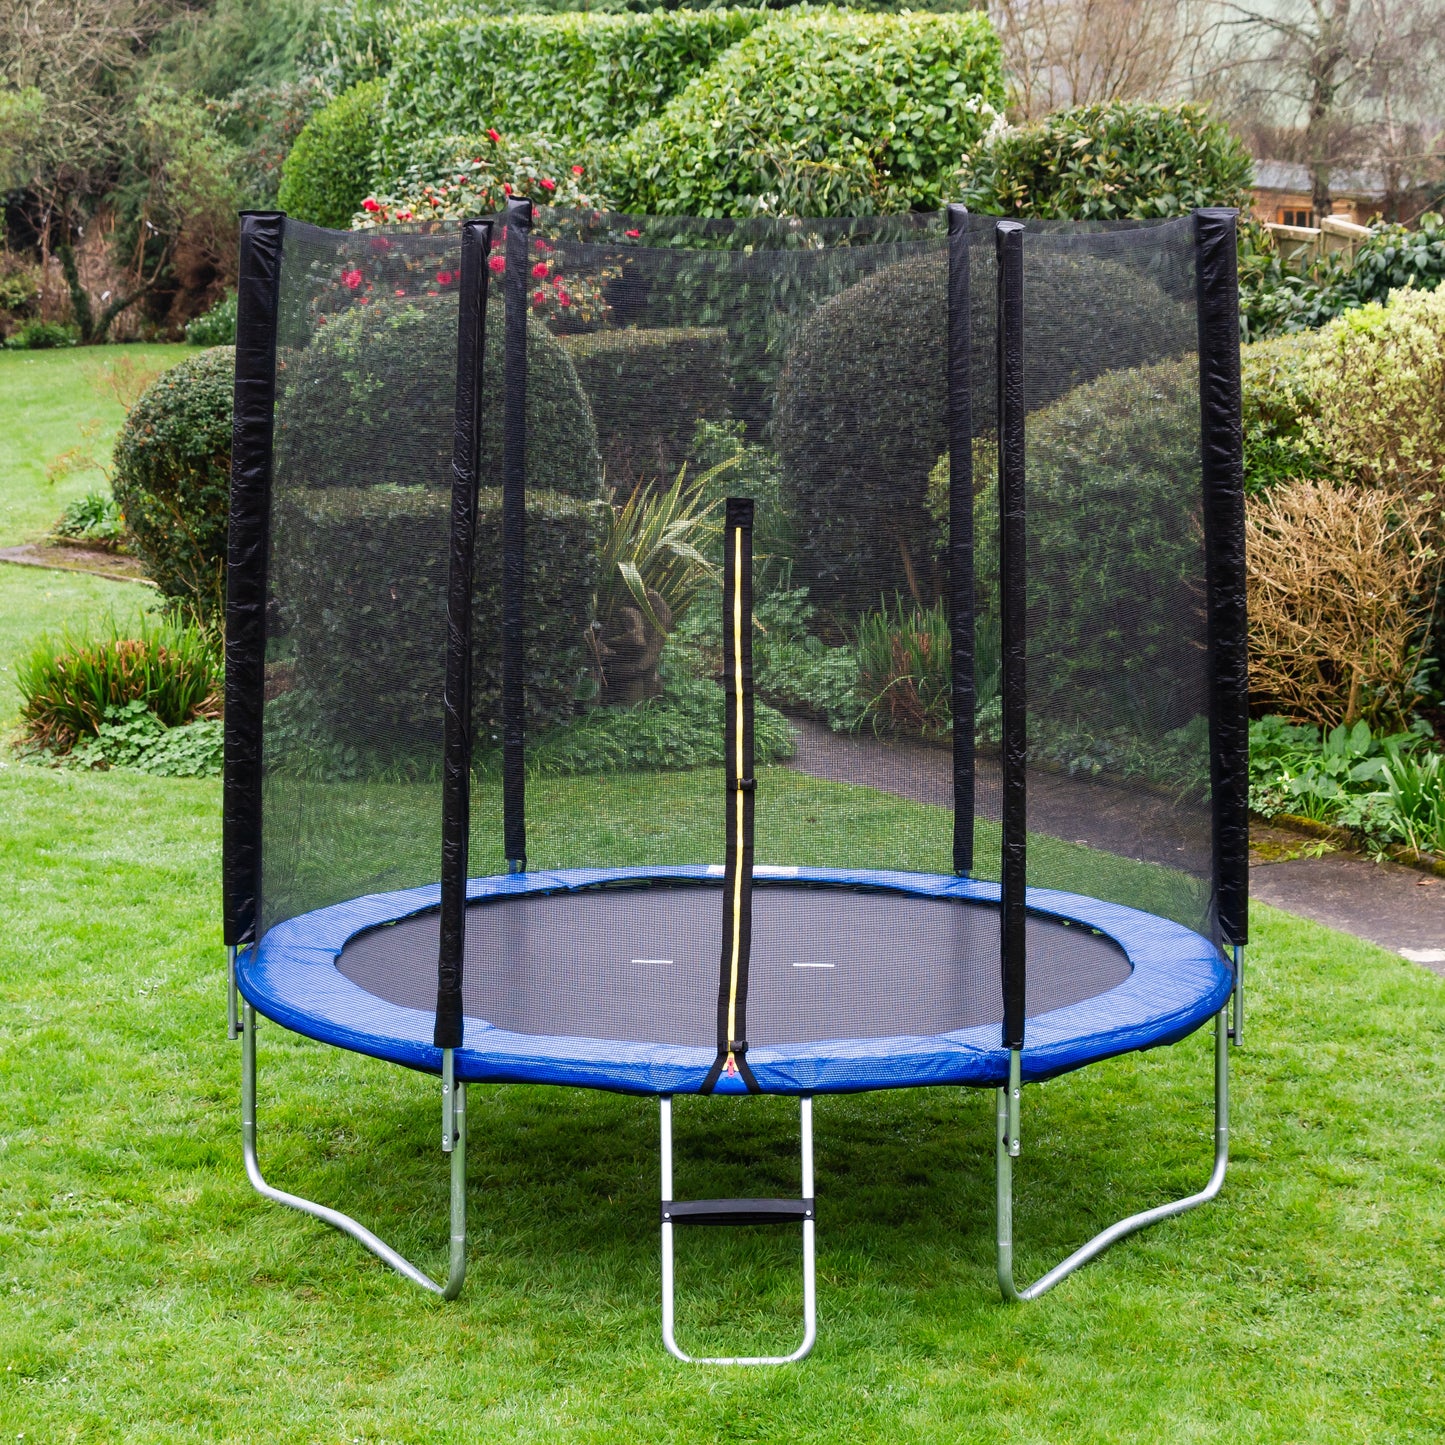 Acrobat 6ft trampoline package